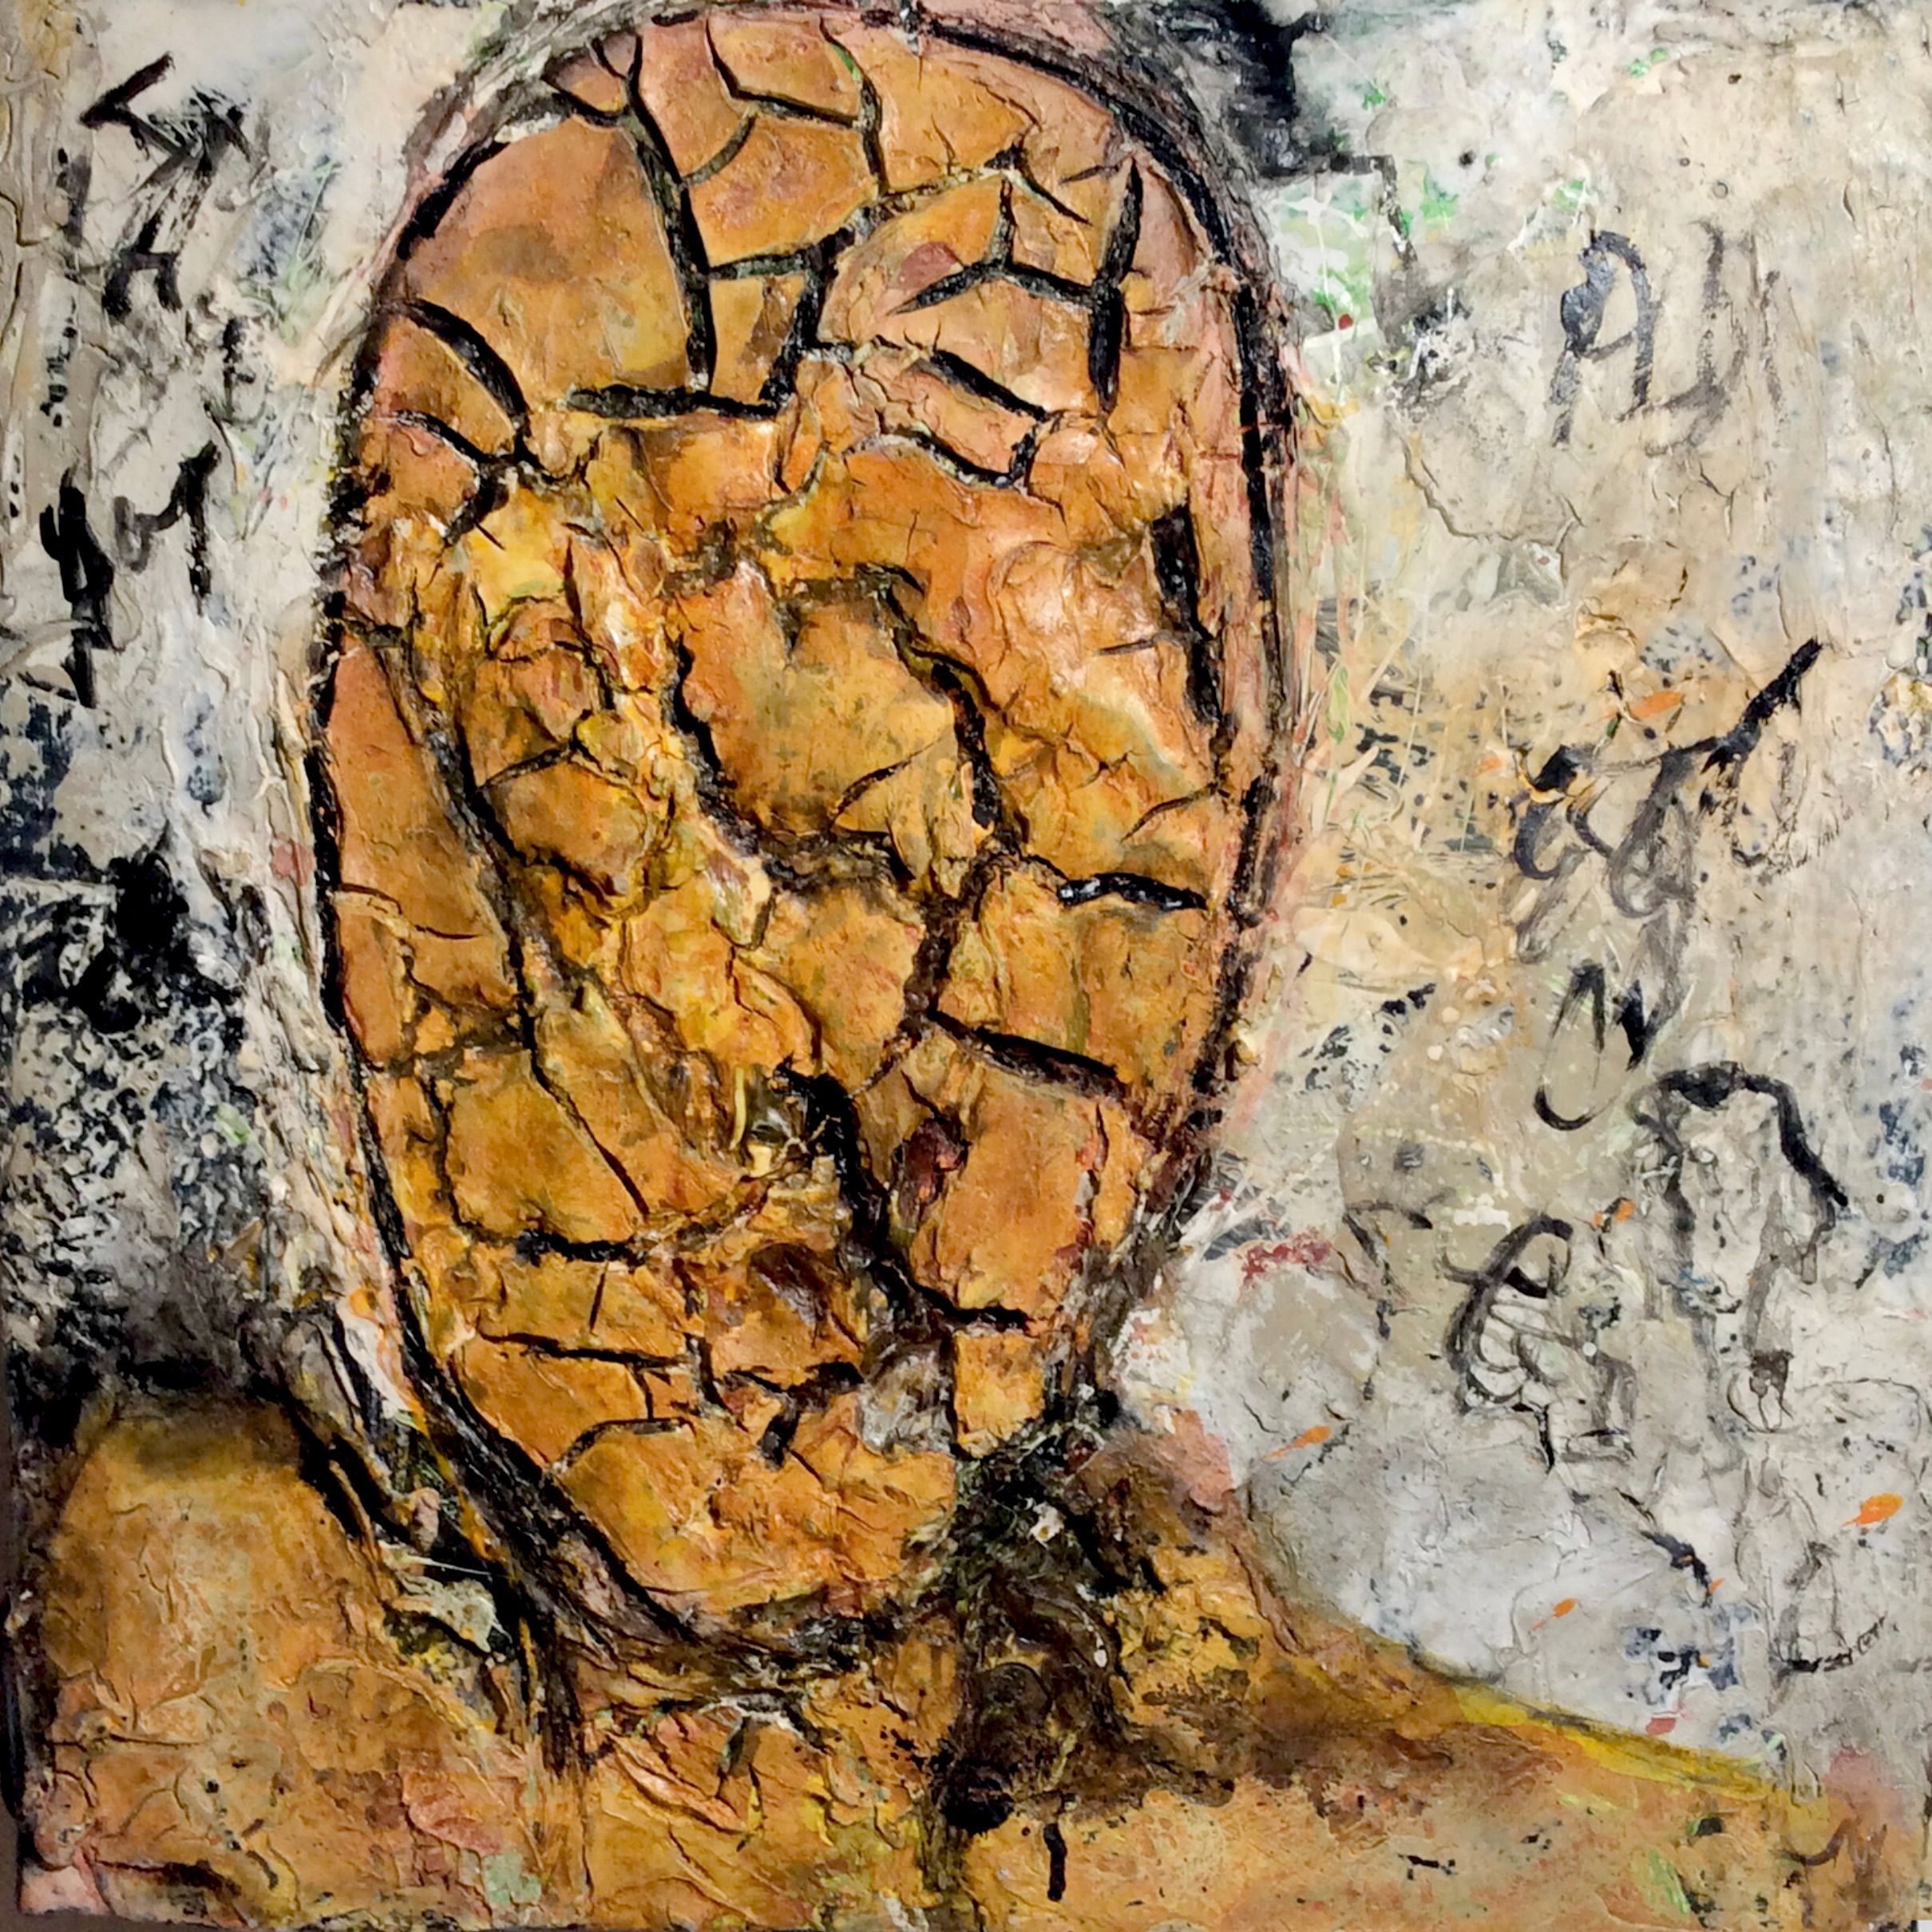 Los objetos murales "sin título" de Ilona Schmidt, de la serie Paisajes faciales, muestran un rostro humano. La paleta de colores del cuadro se compone de varios tonos marrones y ocres. Técnica y materiales utilizados, masilla, tinte y pintura acrílica sobre lienzo.